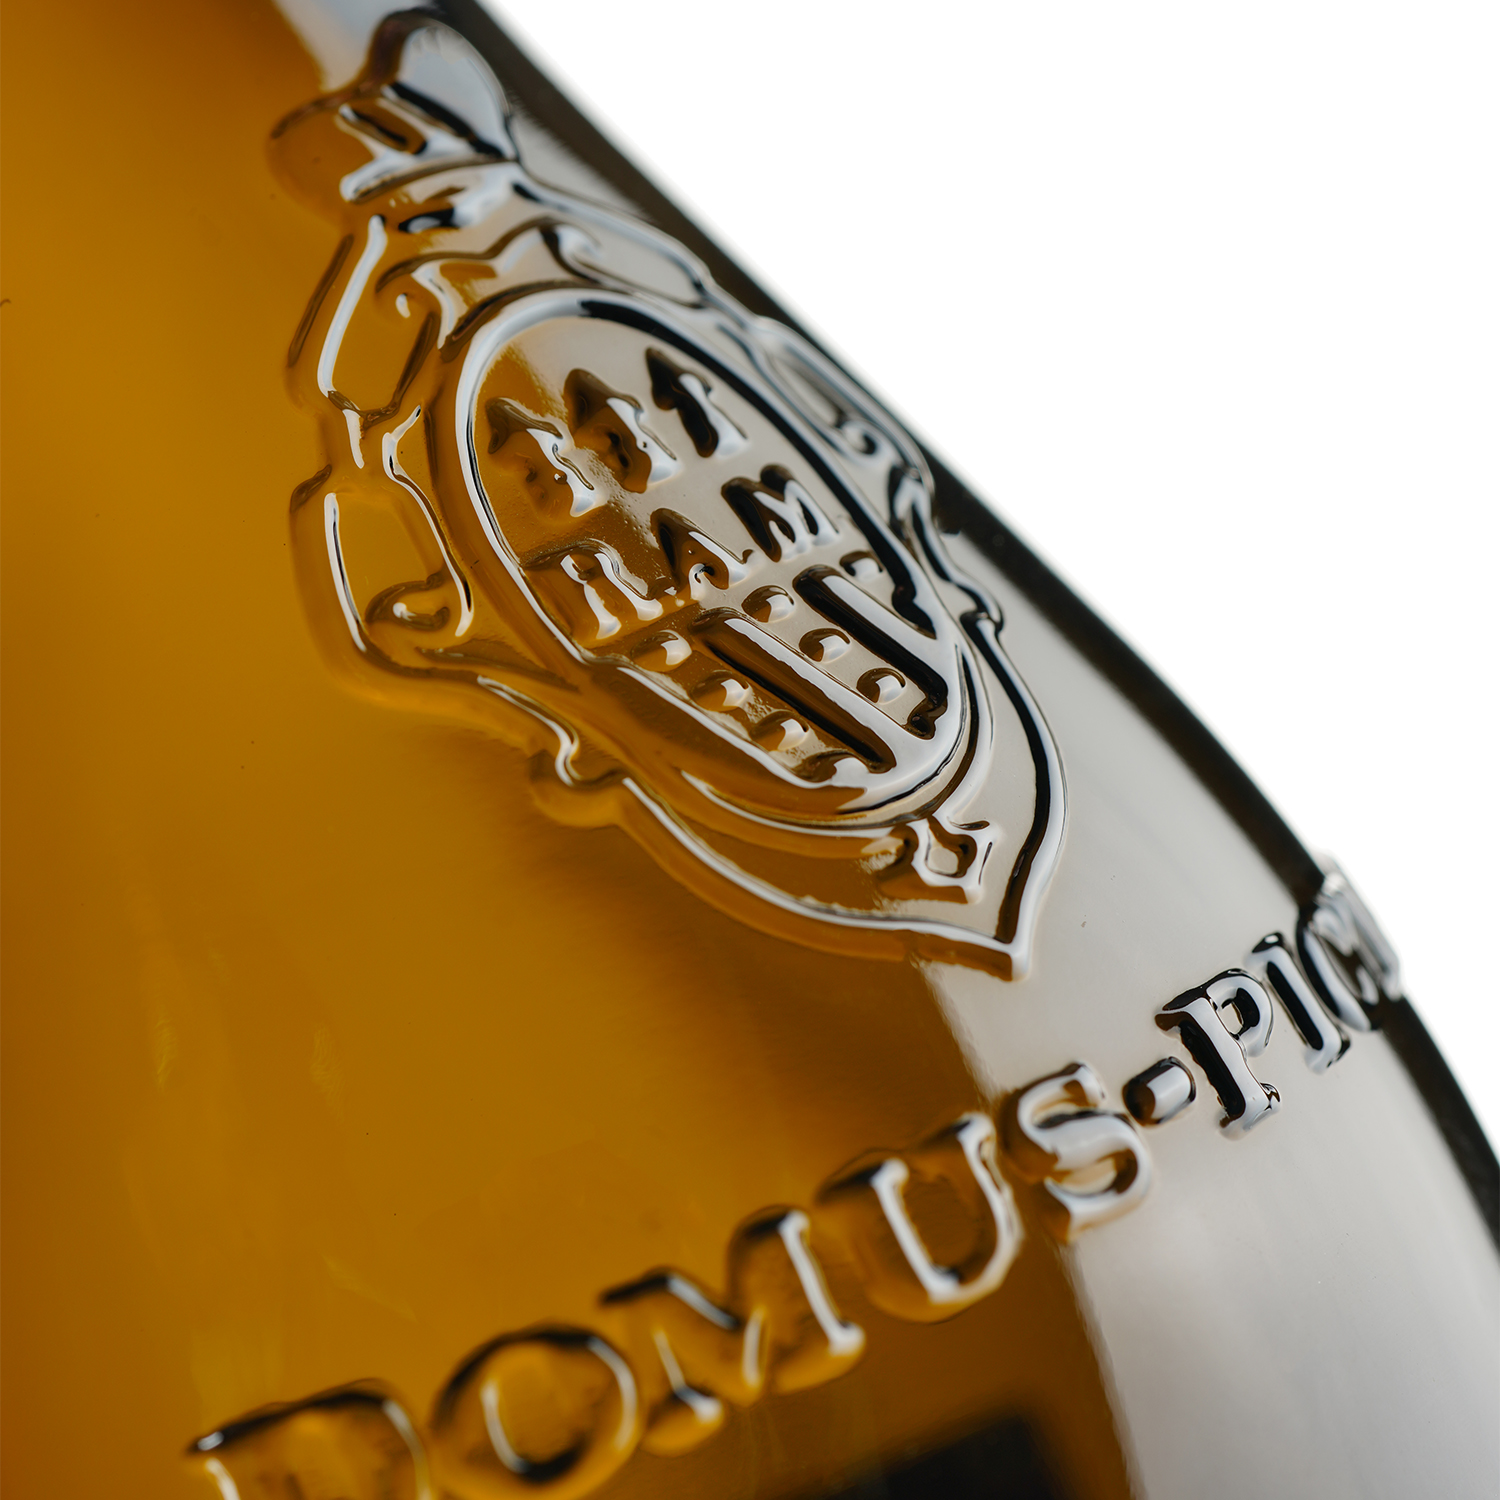 Ігристе вино Domus-pictA Valdobbiadene Prosecco Superiore DOCG Extra Dry, біле, екстра сухе, 0,75 л - фото 4